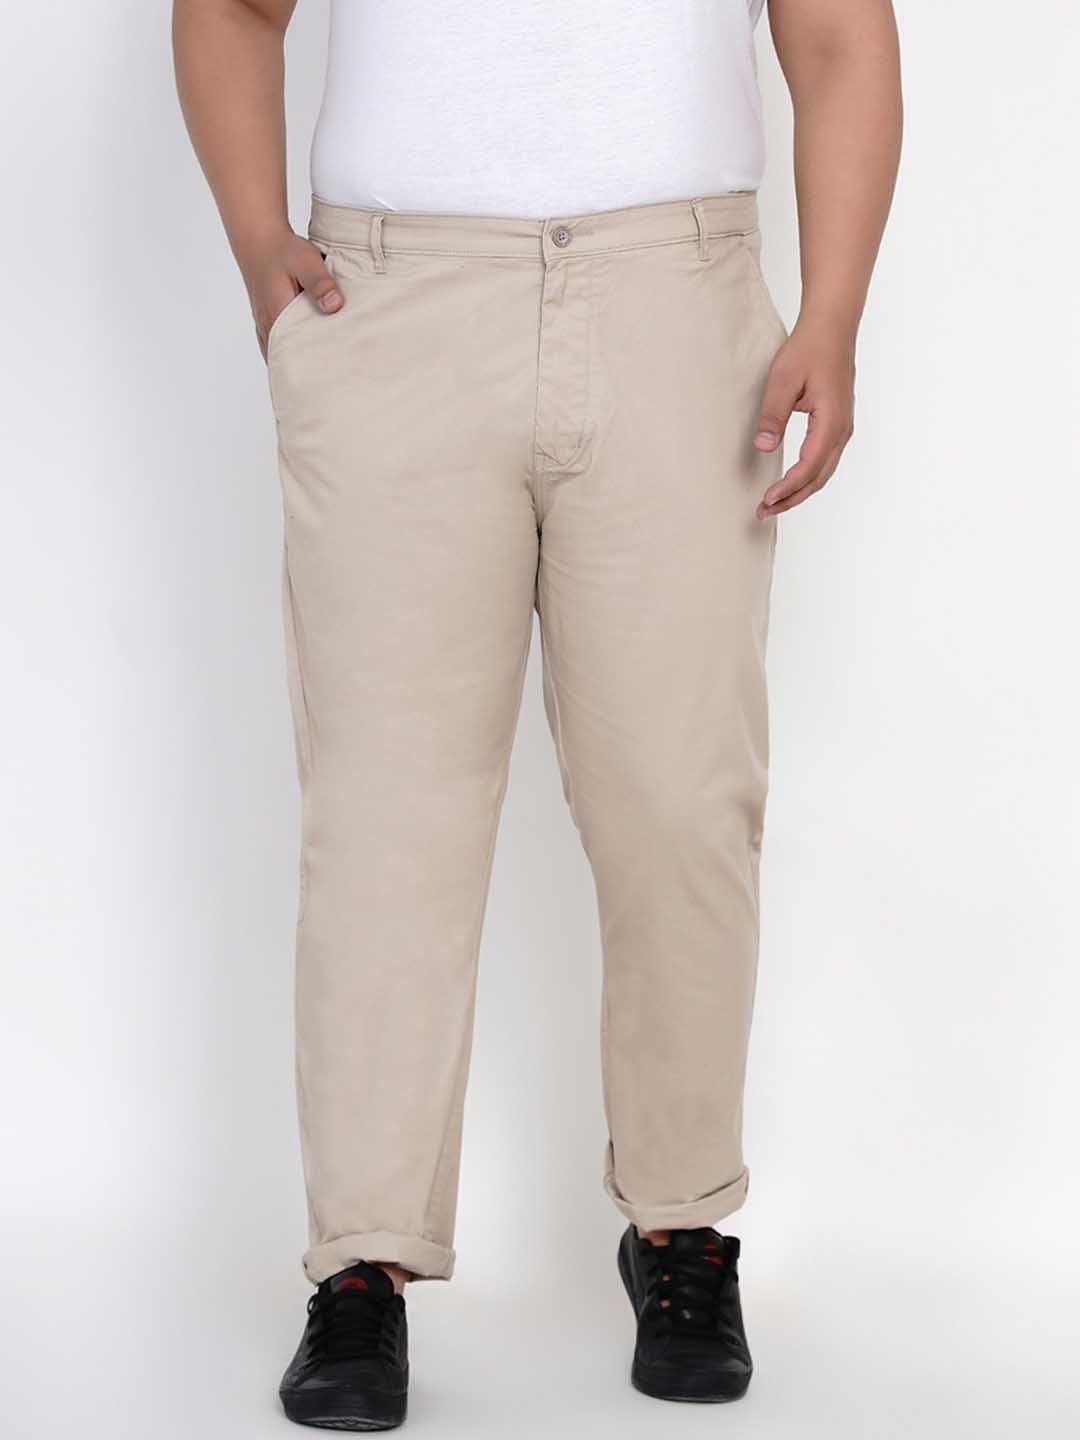 bottomwear/trousers/JPTR2195C/jptr2195c-1.jpg